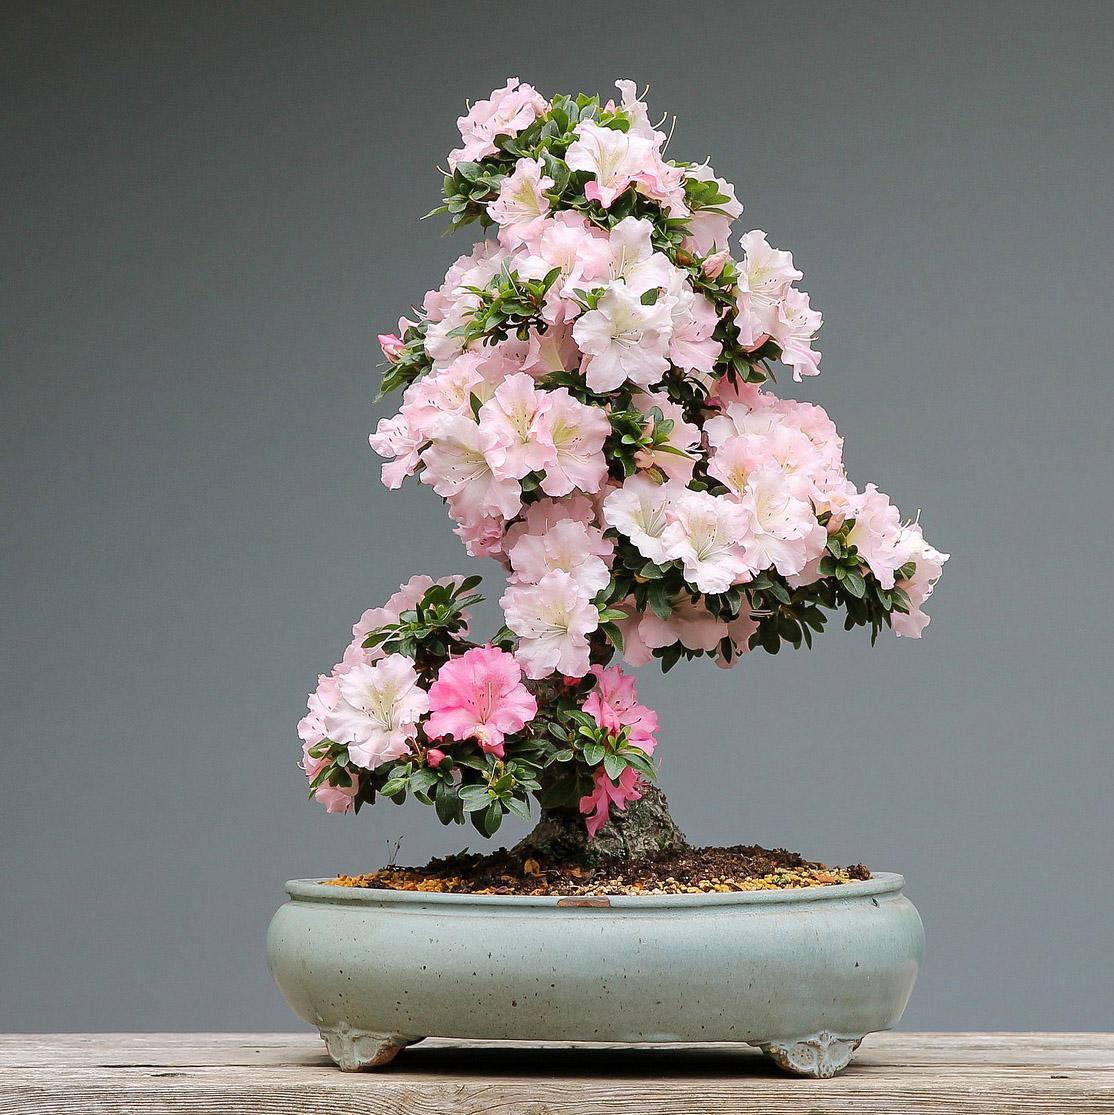 Kukkiva ruukkuatsalea on upea bonsai. Atsalean voi muotoilla mihin tahansa muotoon. (Kuva: Pixabay)